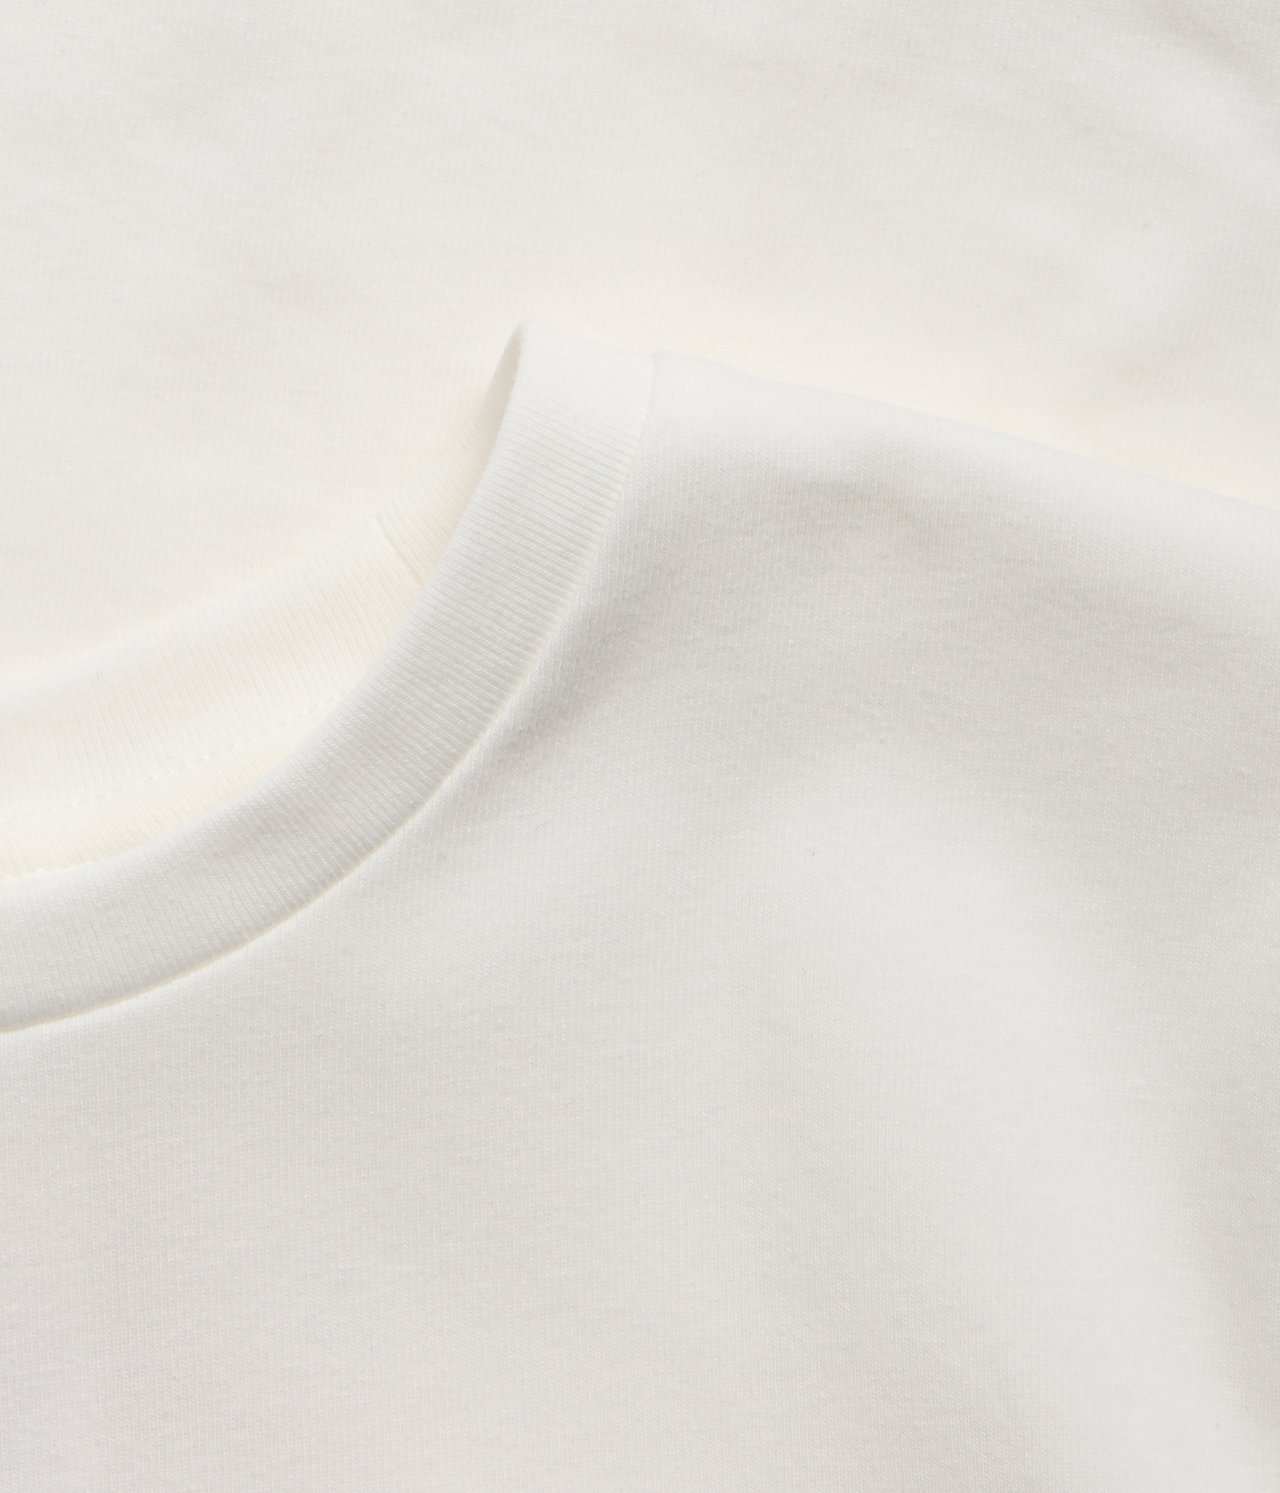 T-shirt - Offwhite - 5